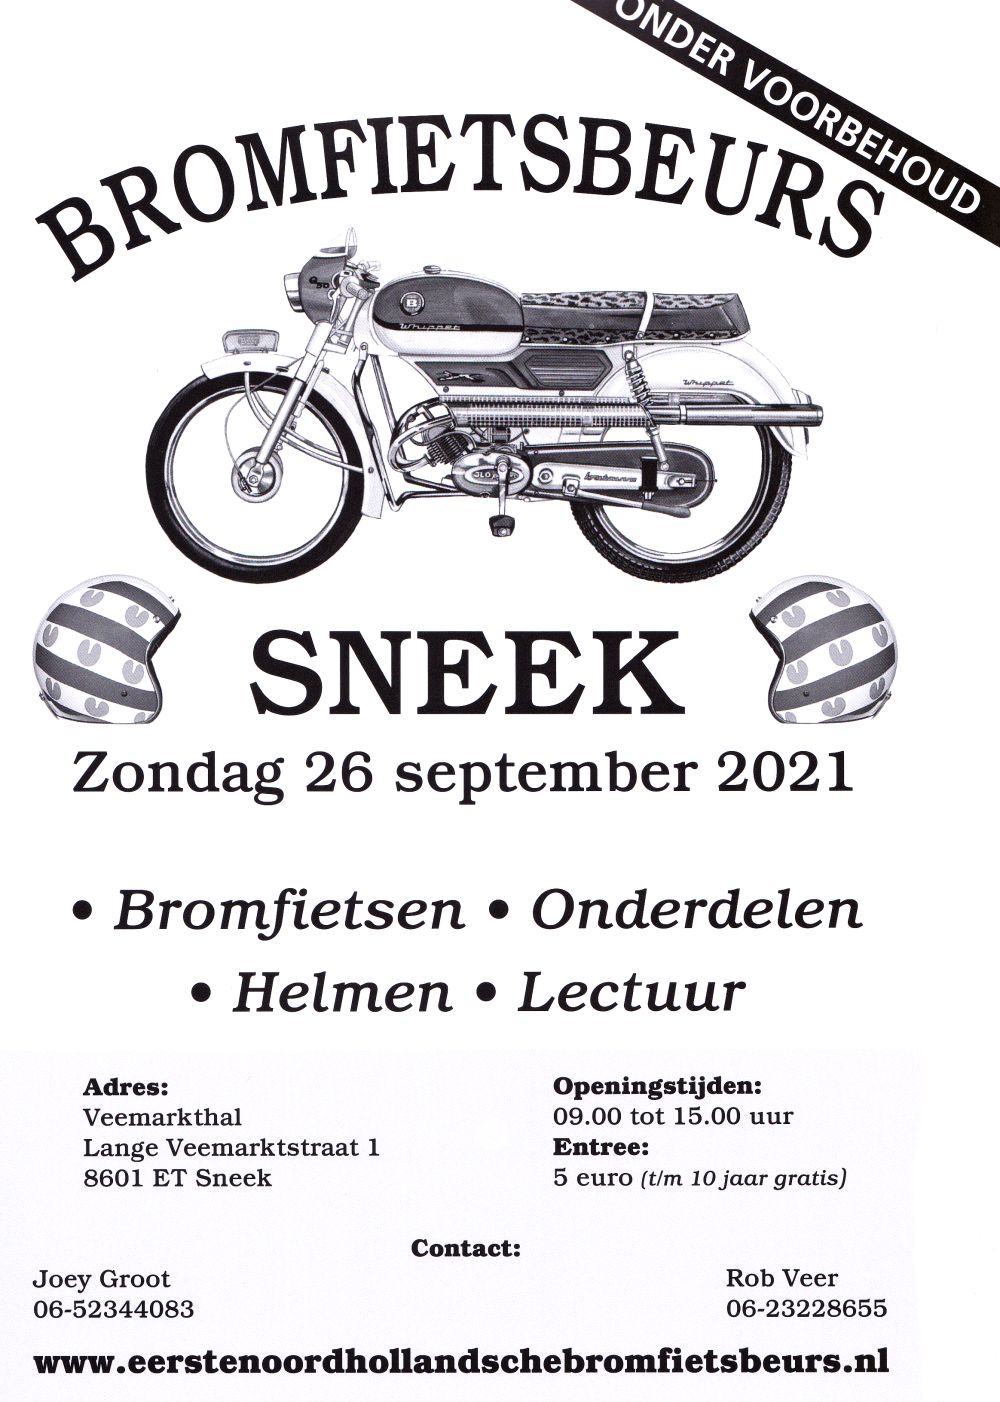 Bromfietsbeurs Sneek Poster 2021